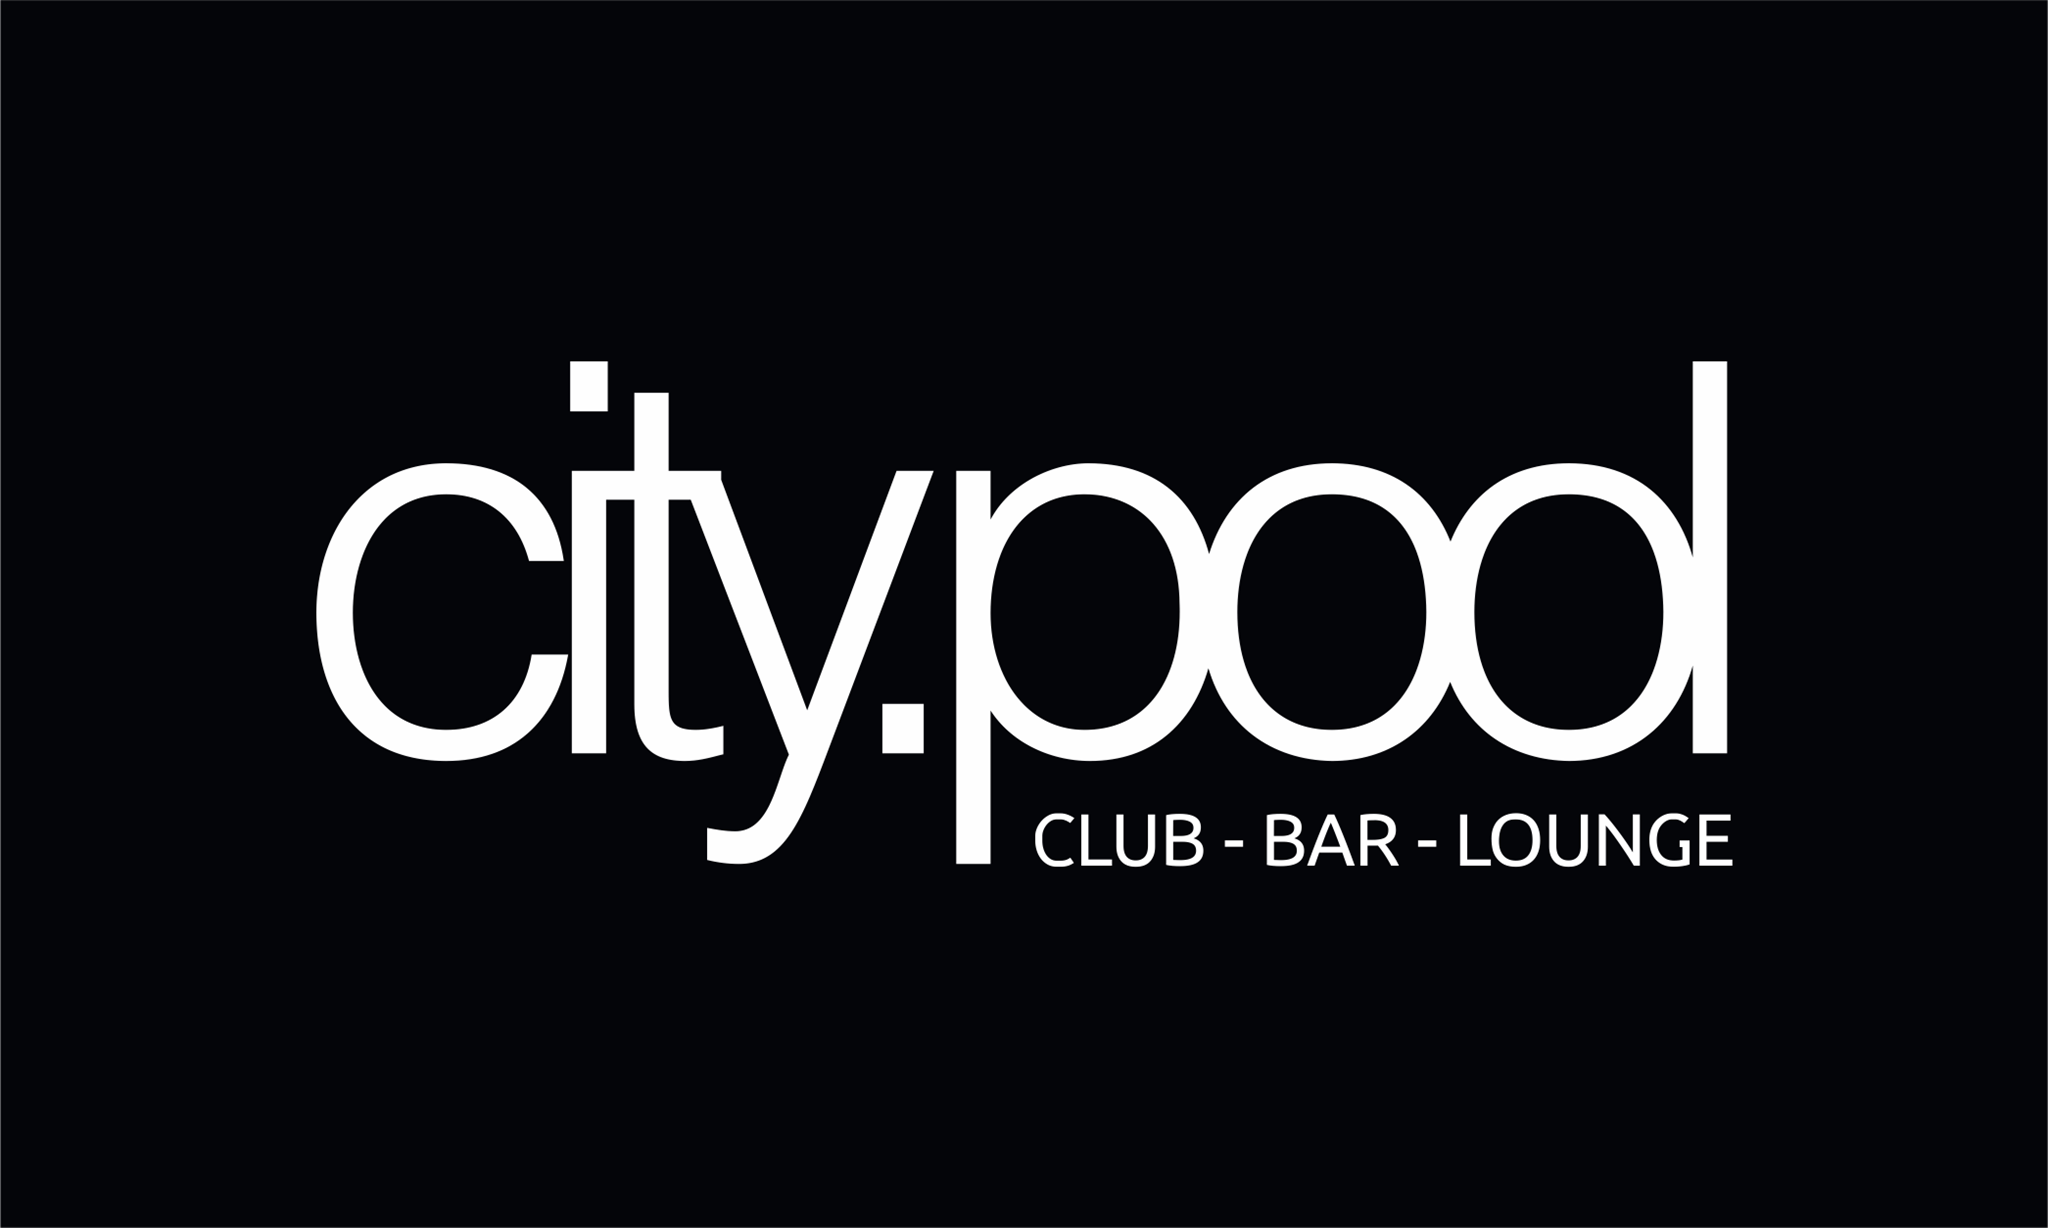 City Pool Club Bar Lounge GÖppingen